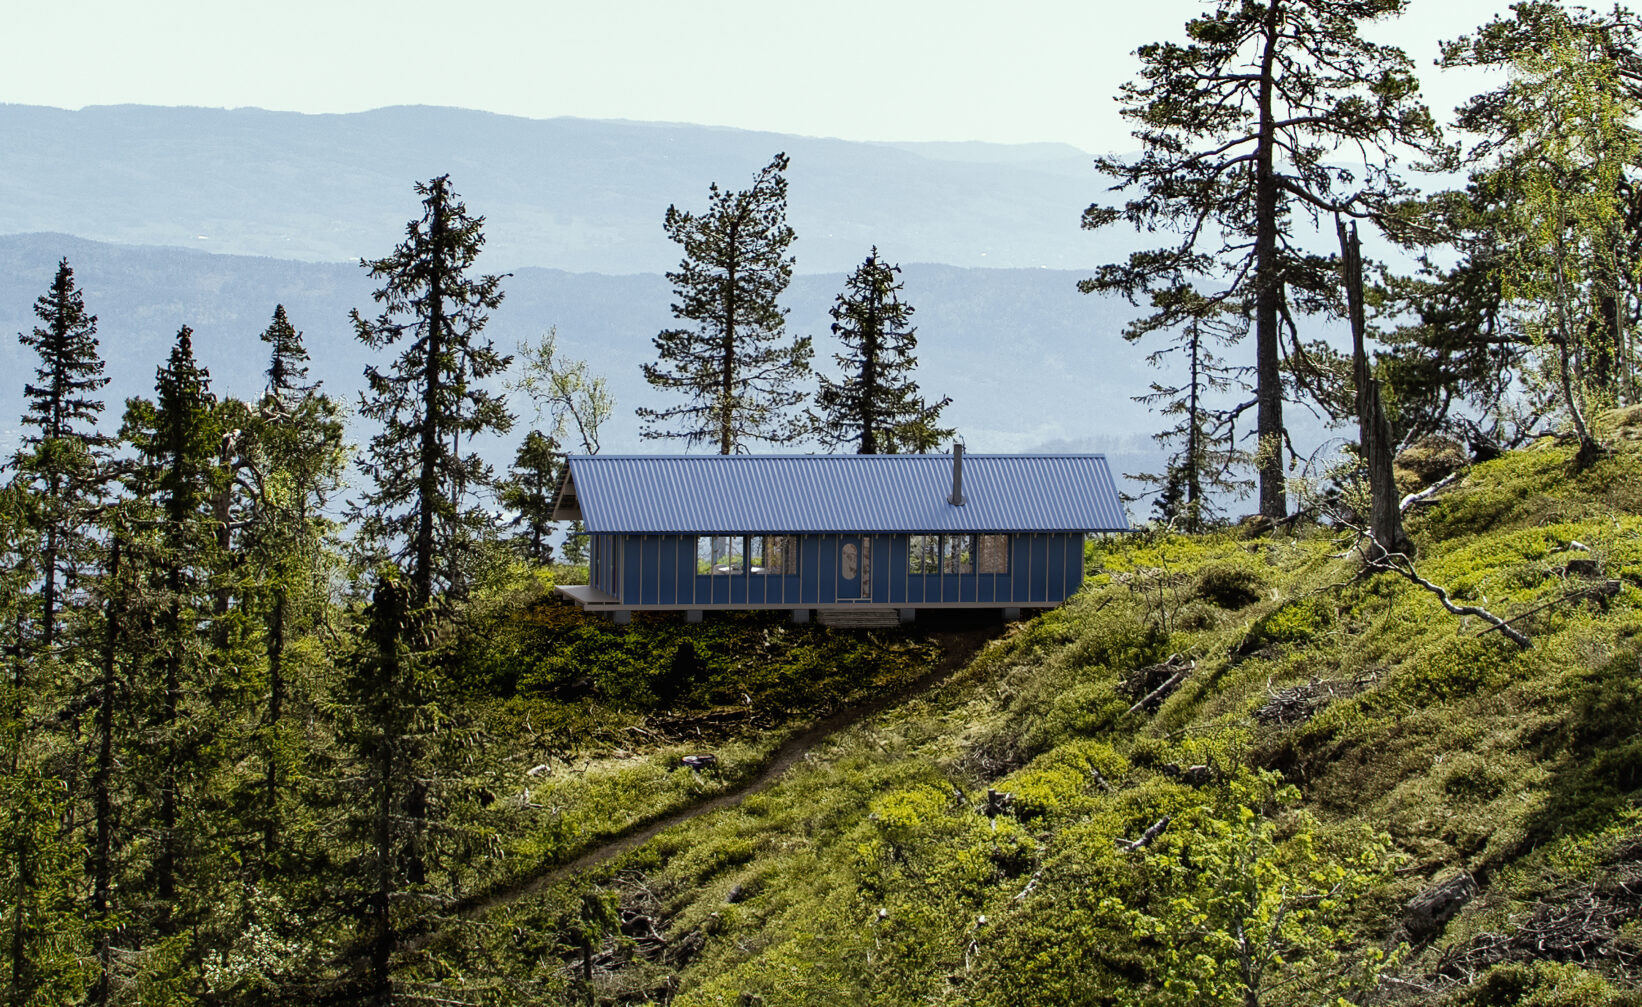 en blå hytte ligger på toppen av en åsside.